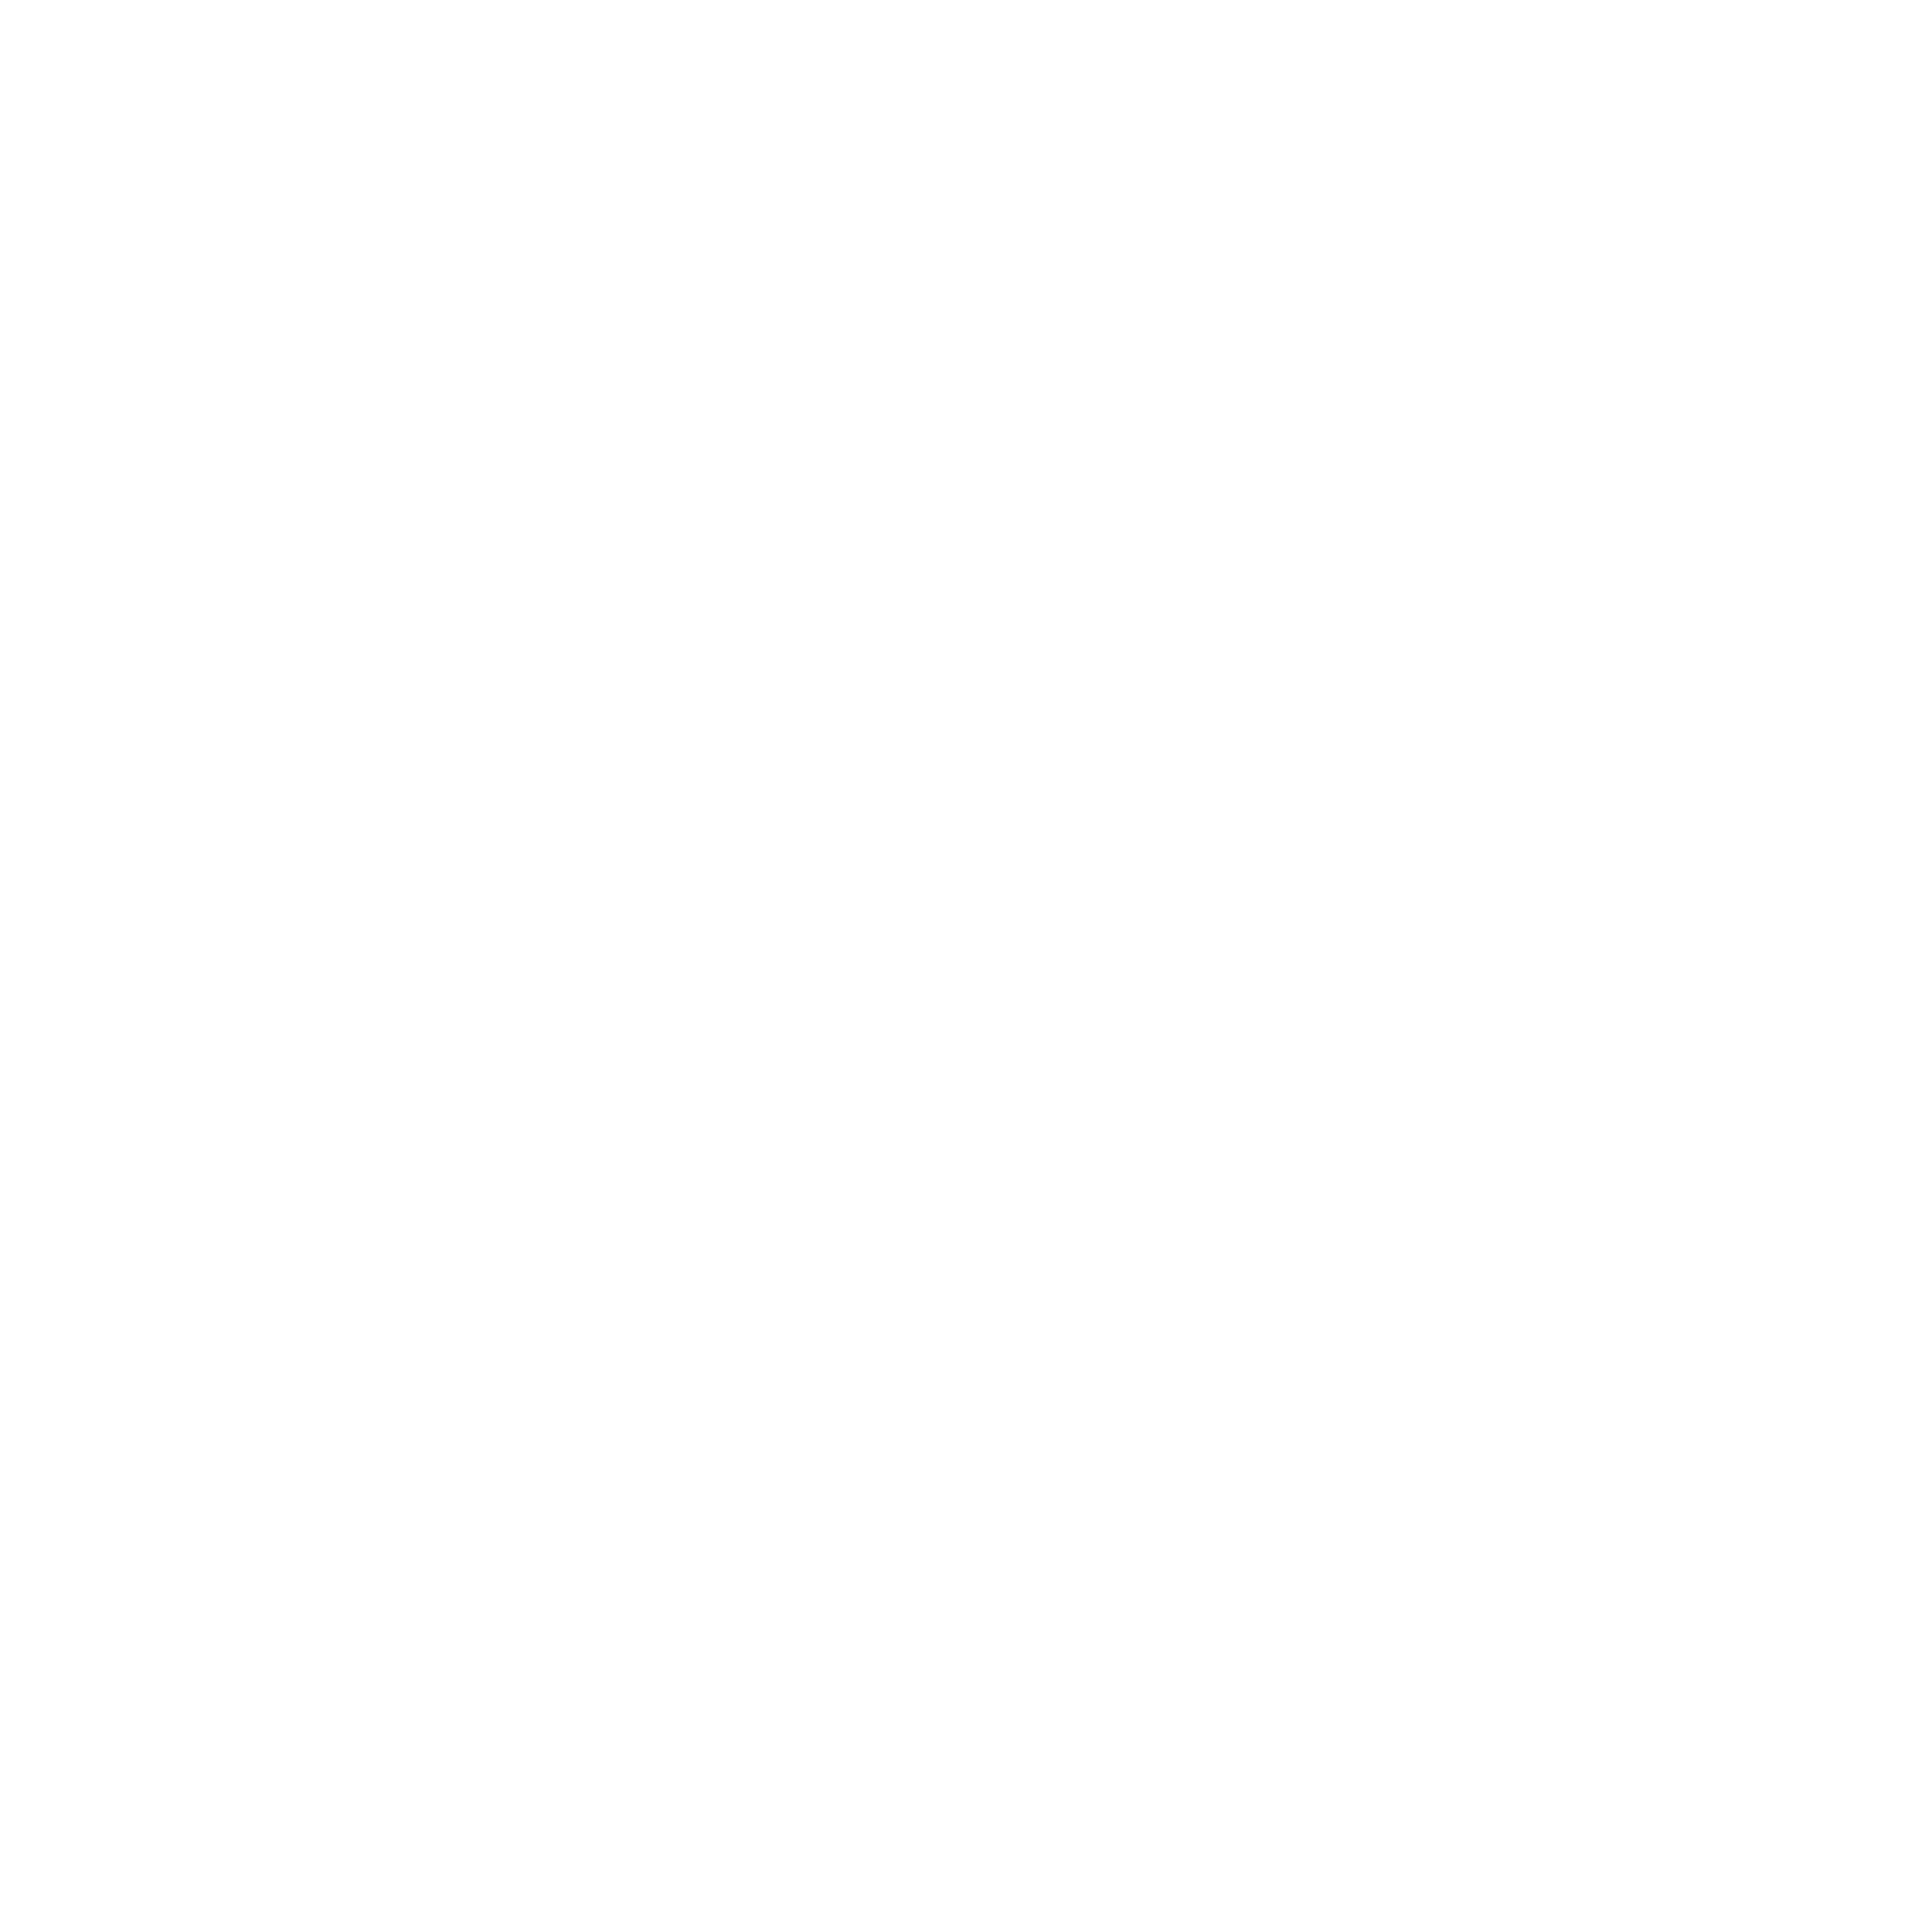 IV Nation